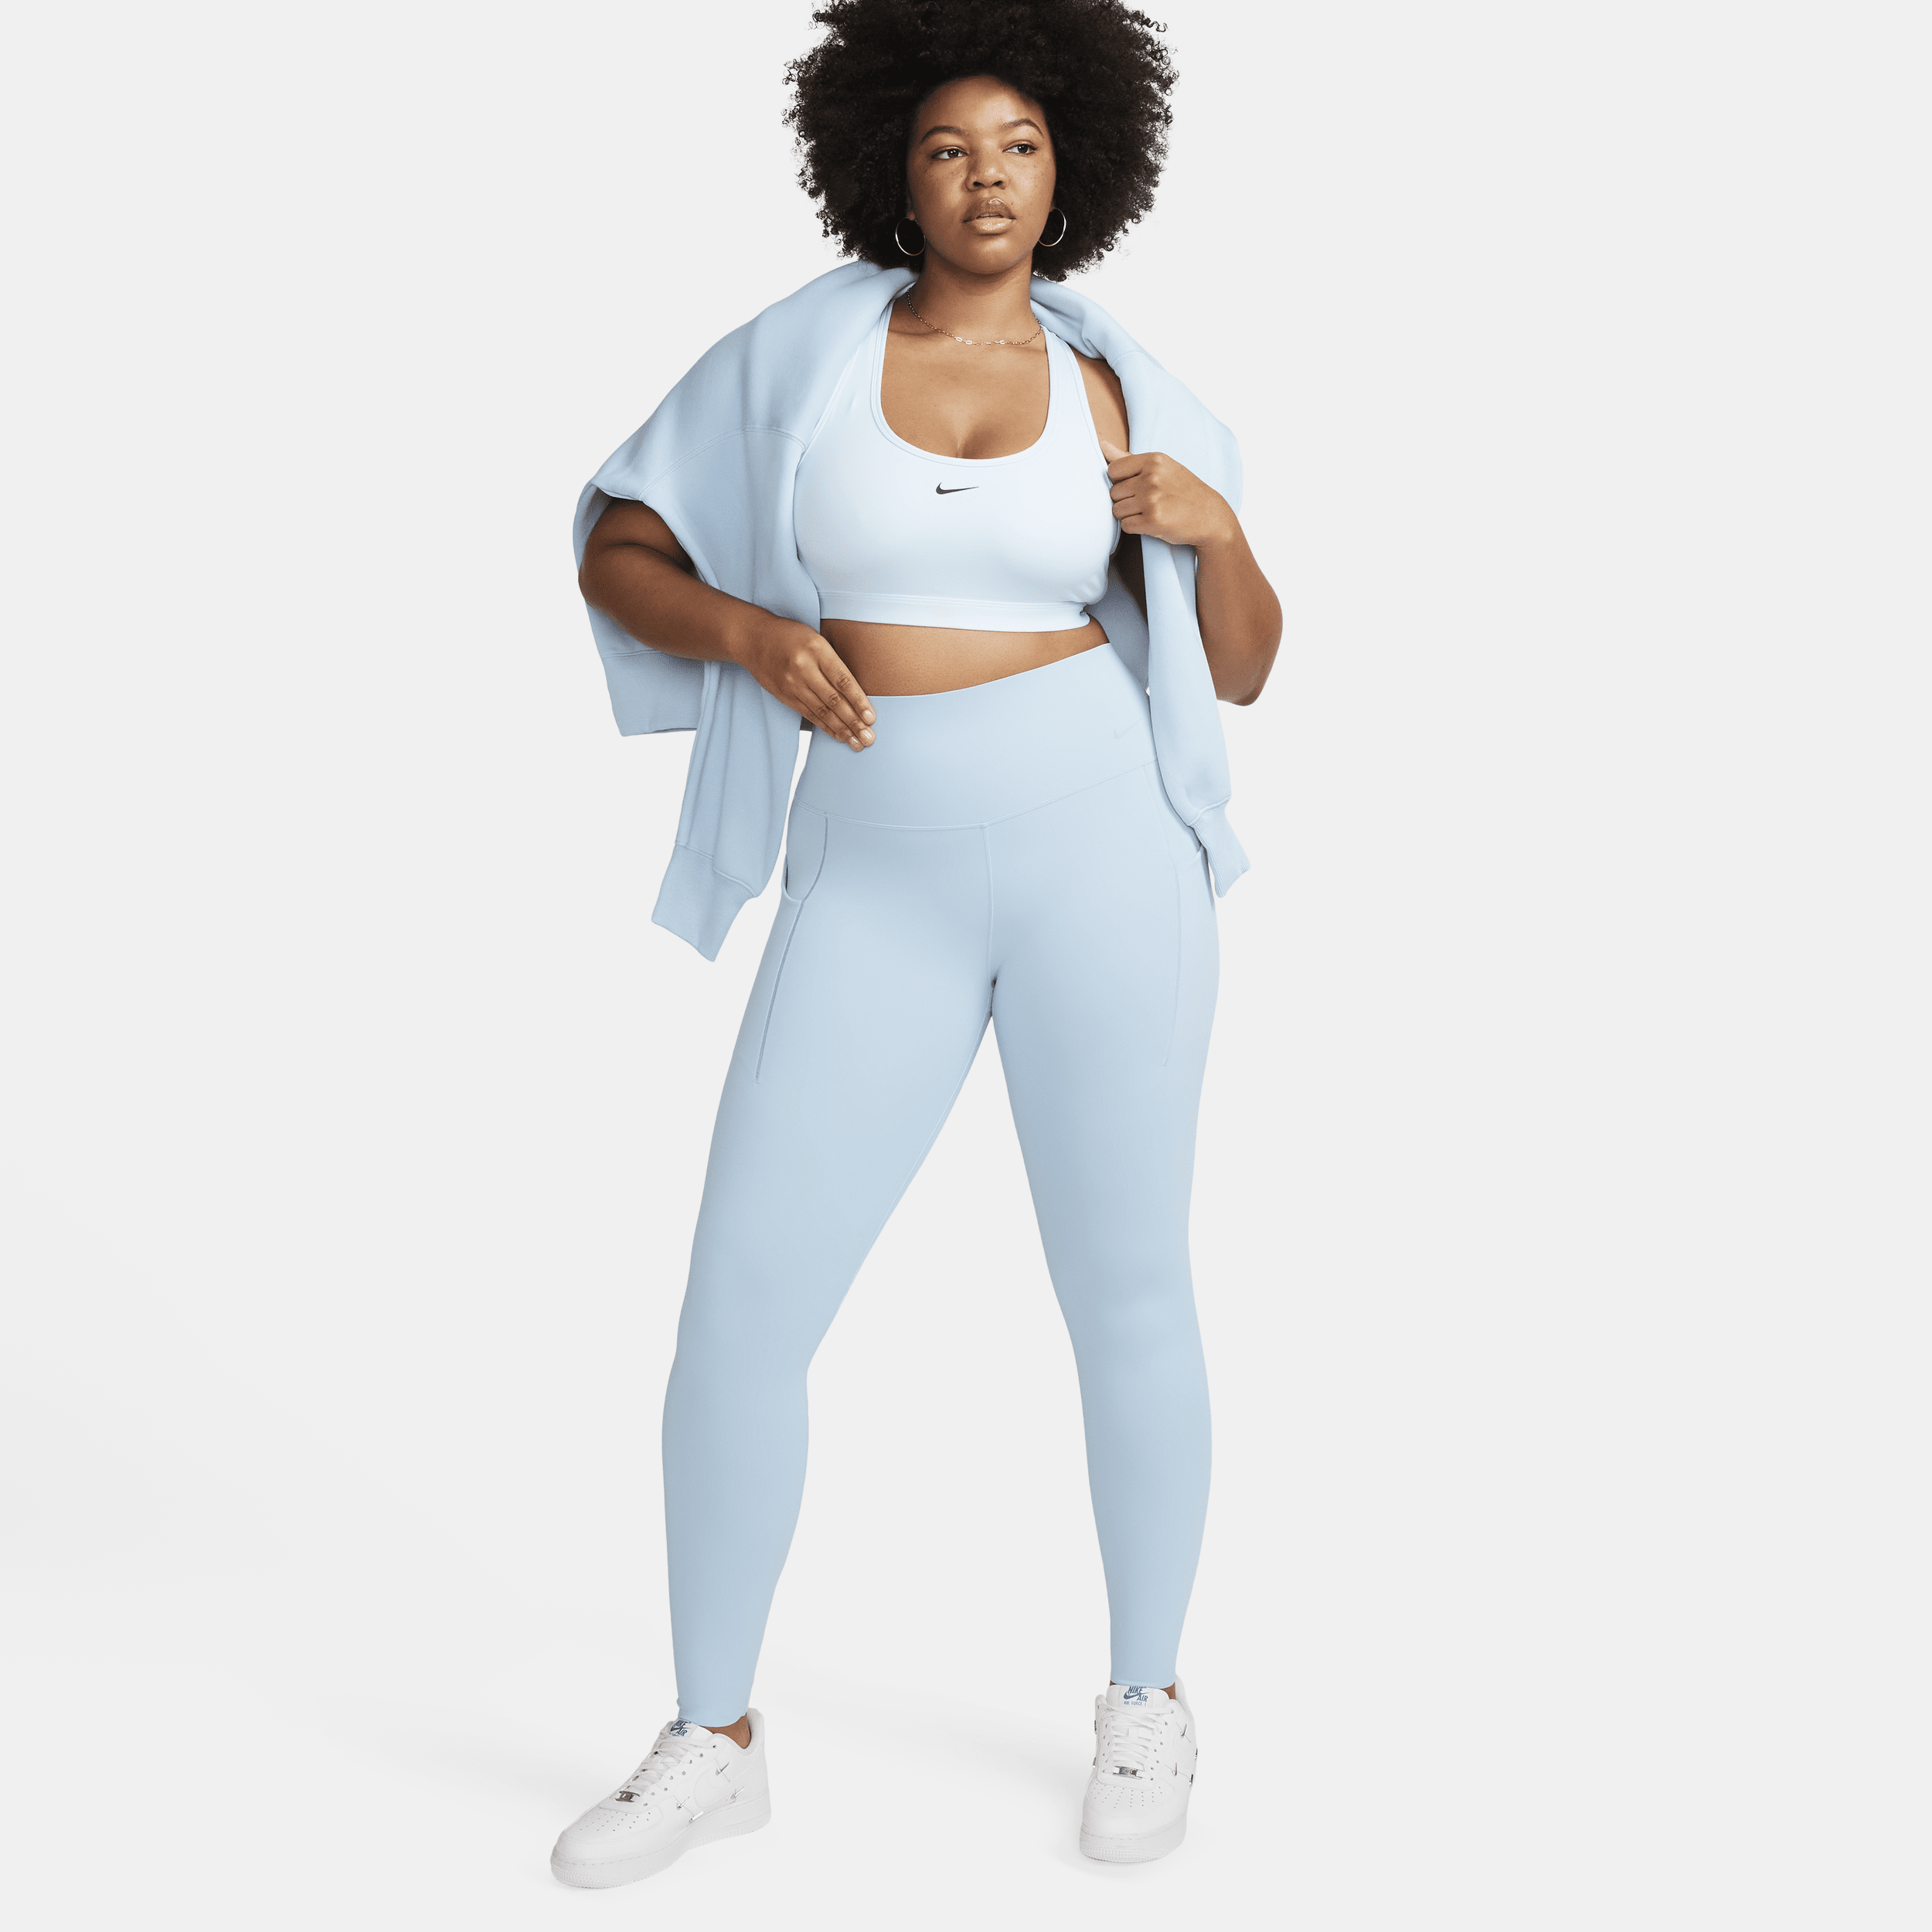 Nike Universa-leggings i fuld længde med medium støtte, høj talje og lommer til kvinder - blå